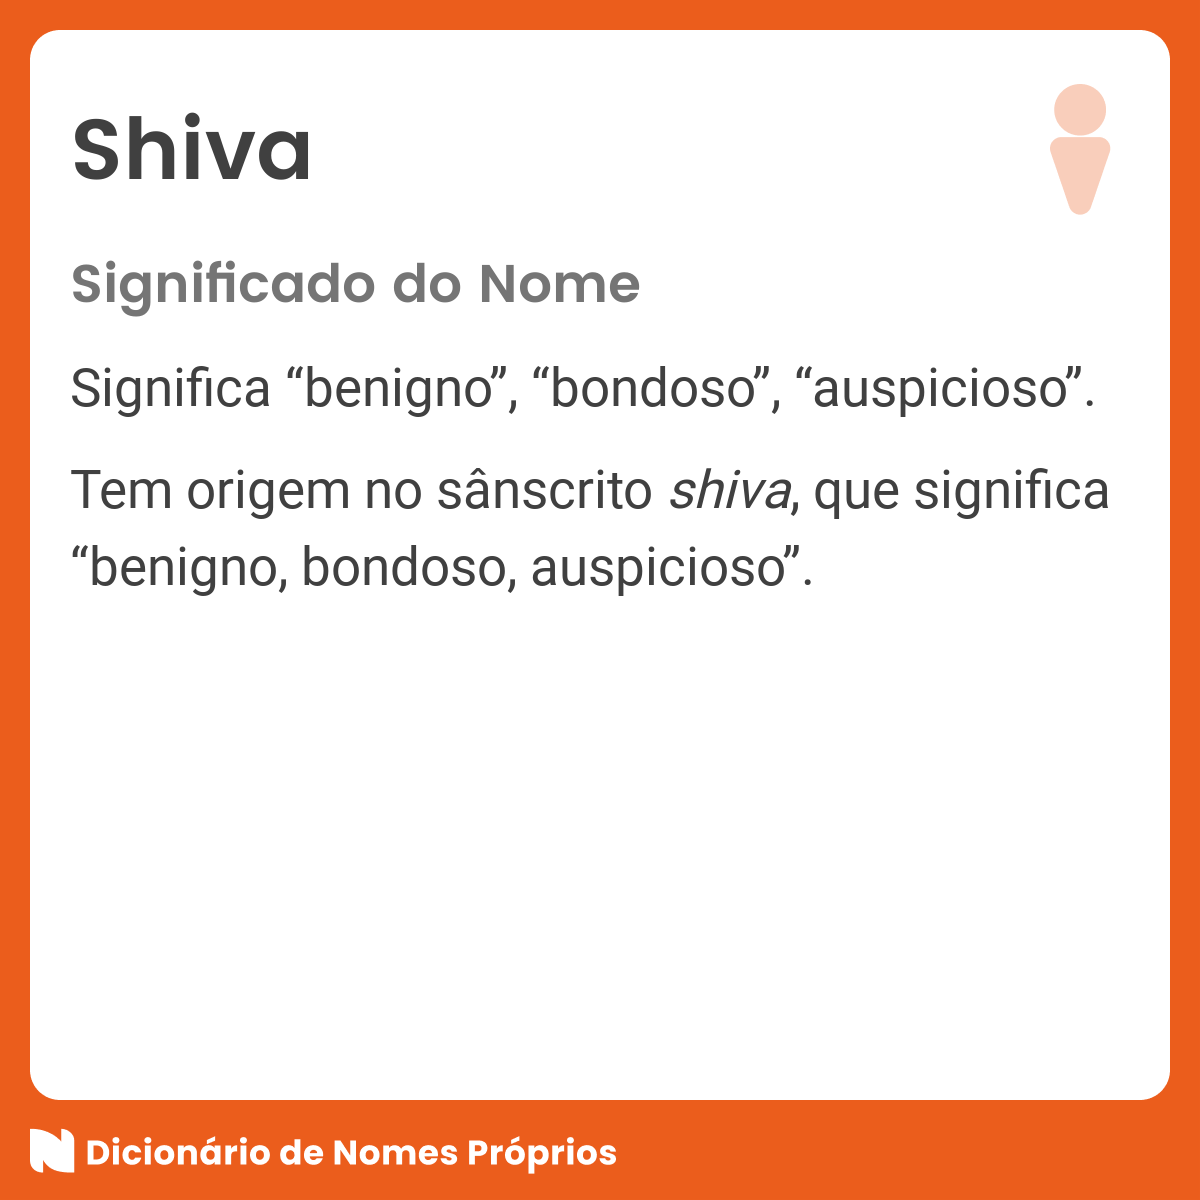 O que significa a palavra Shiva?